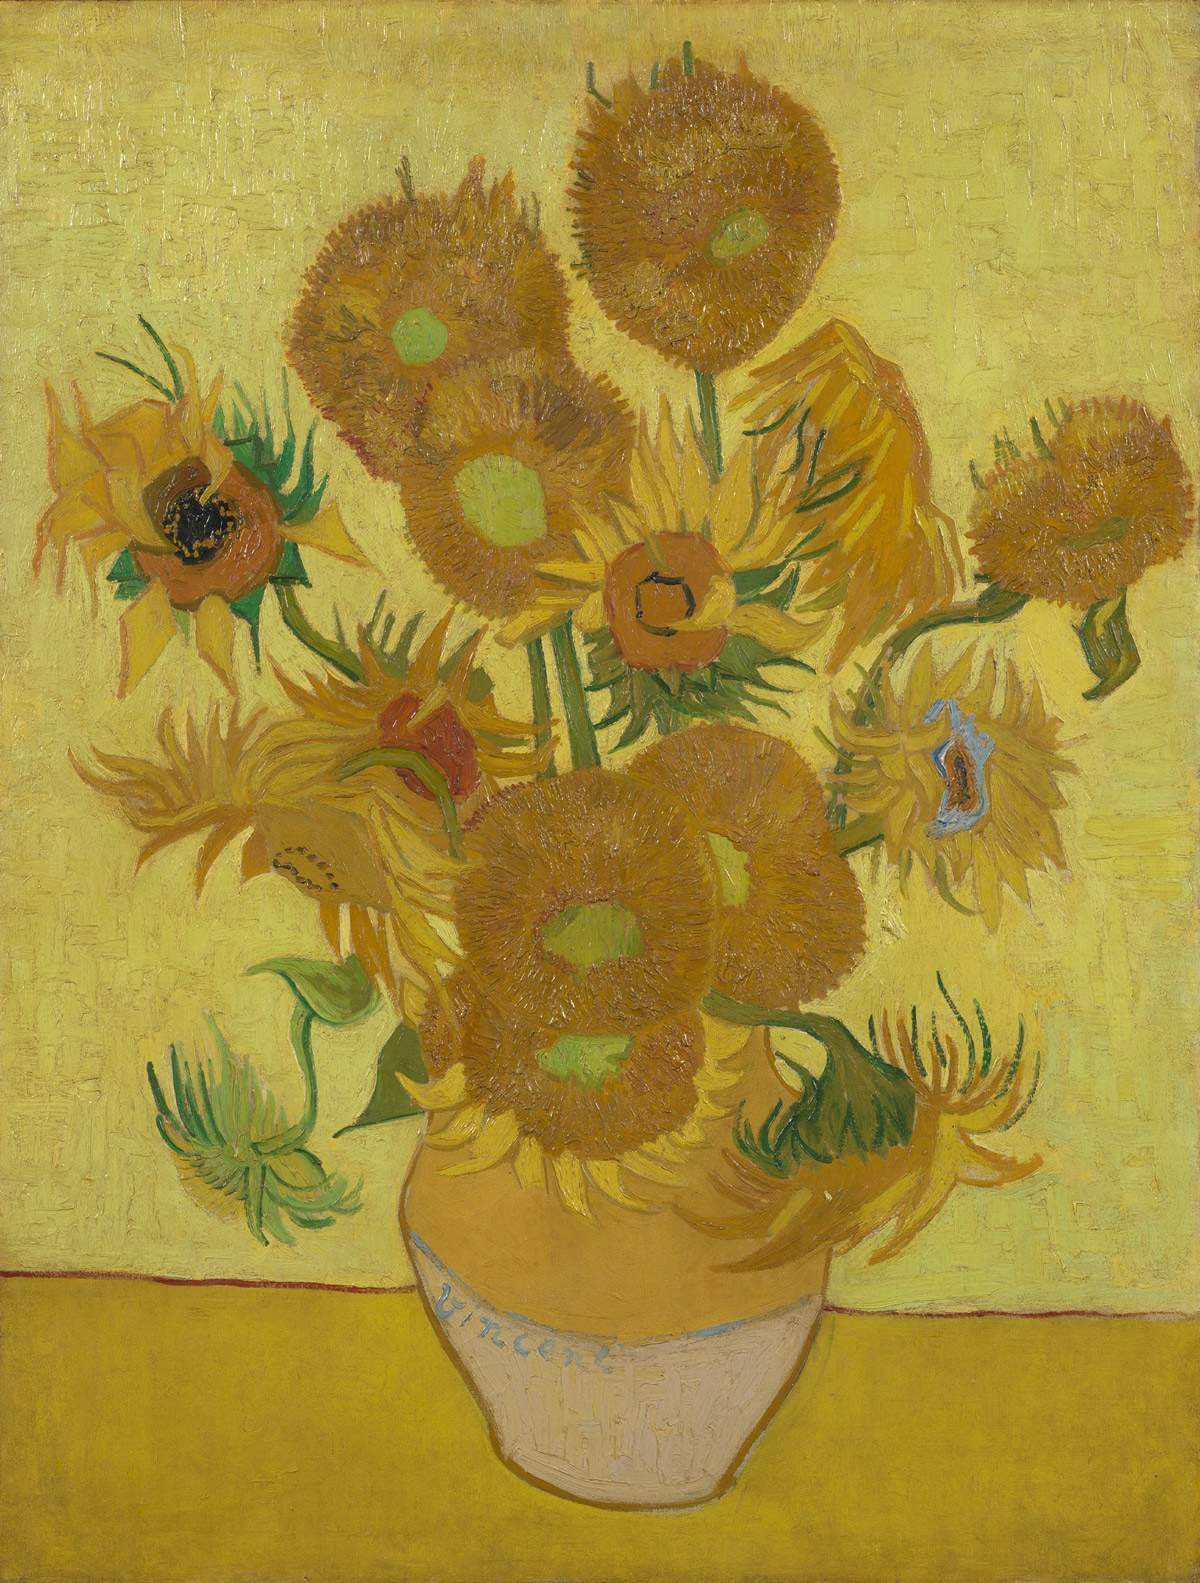 Nouvelles études sur les Tournesols de van Gogh (et un peu d'Italie) : une œuvre très fragile